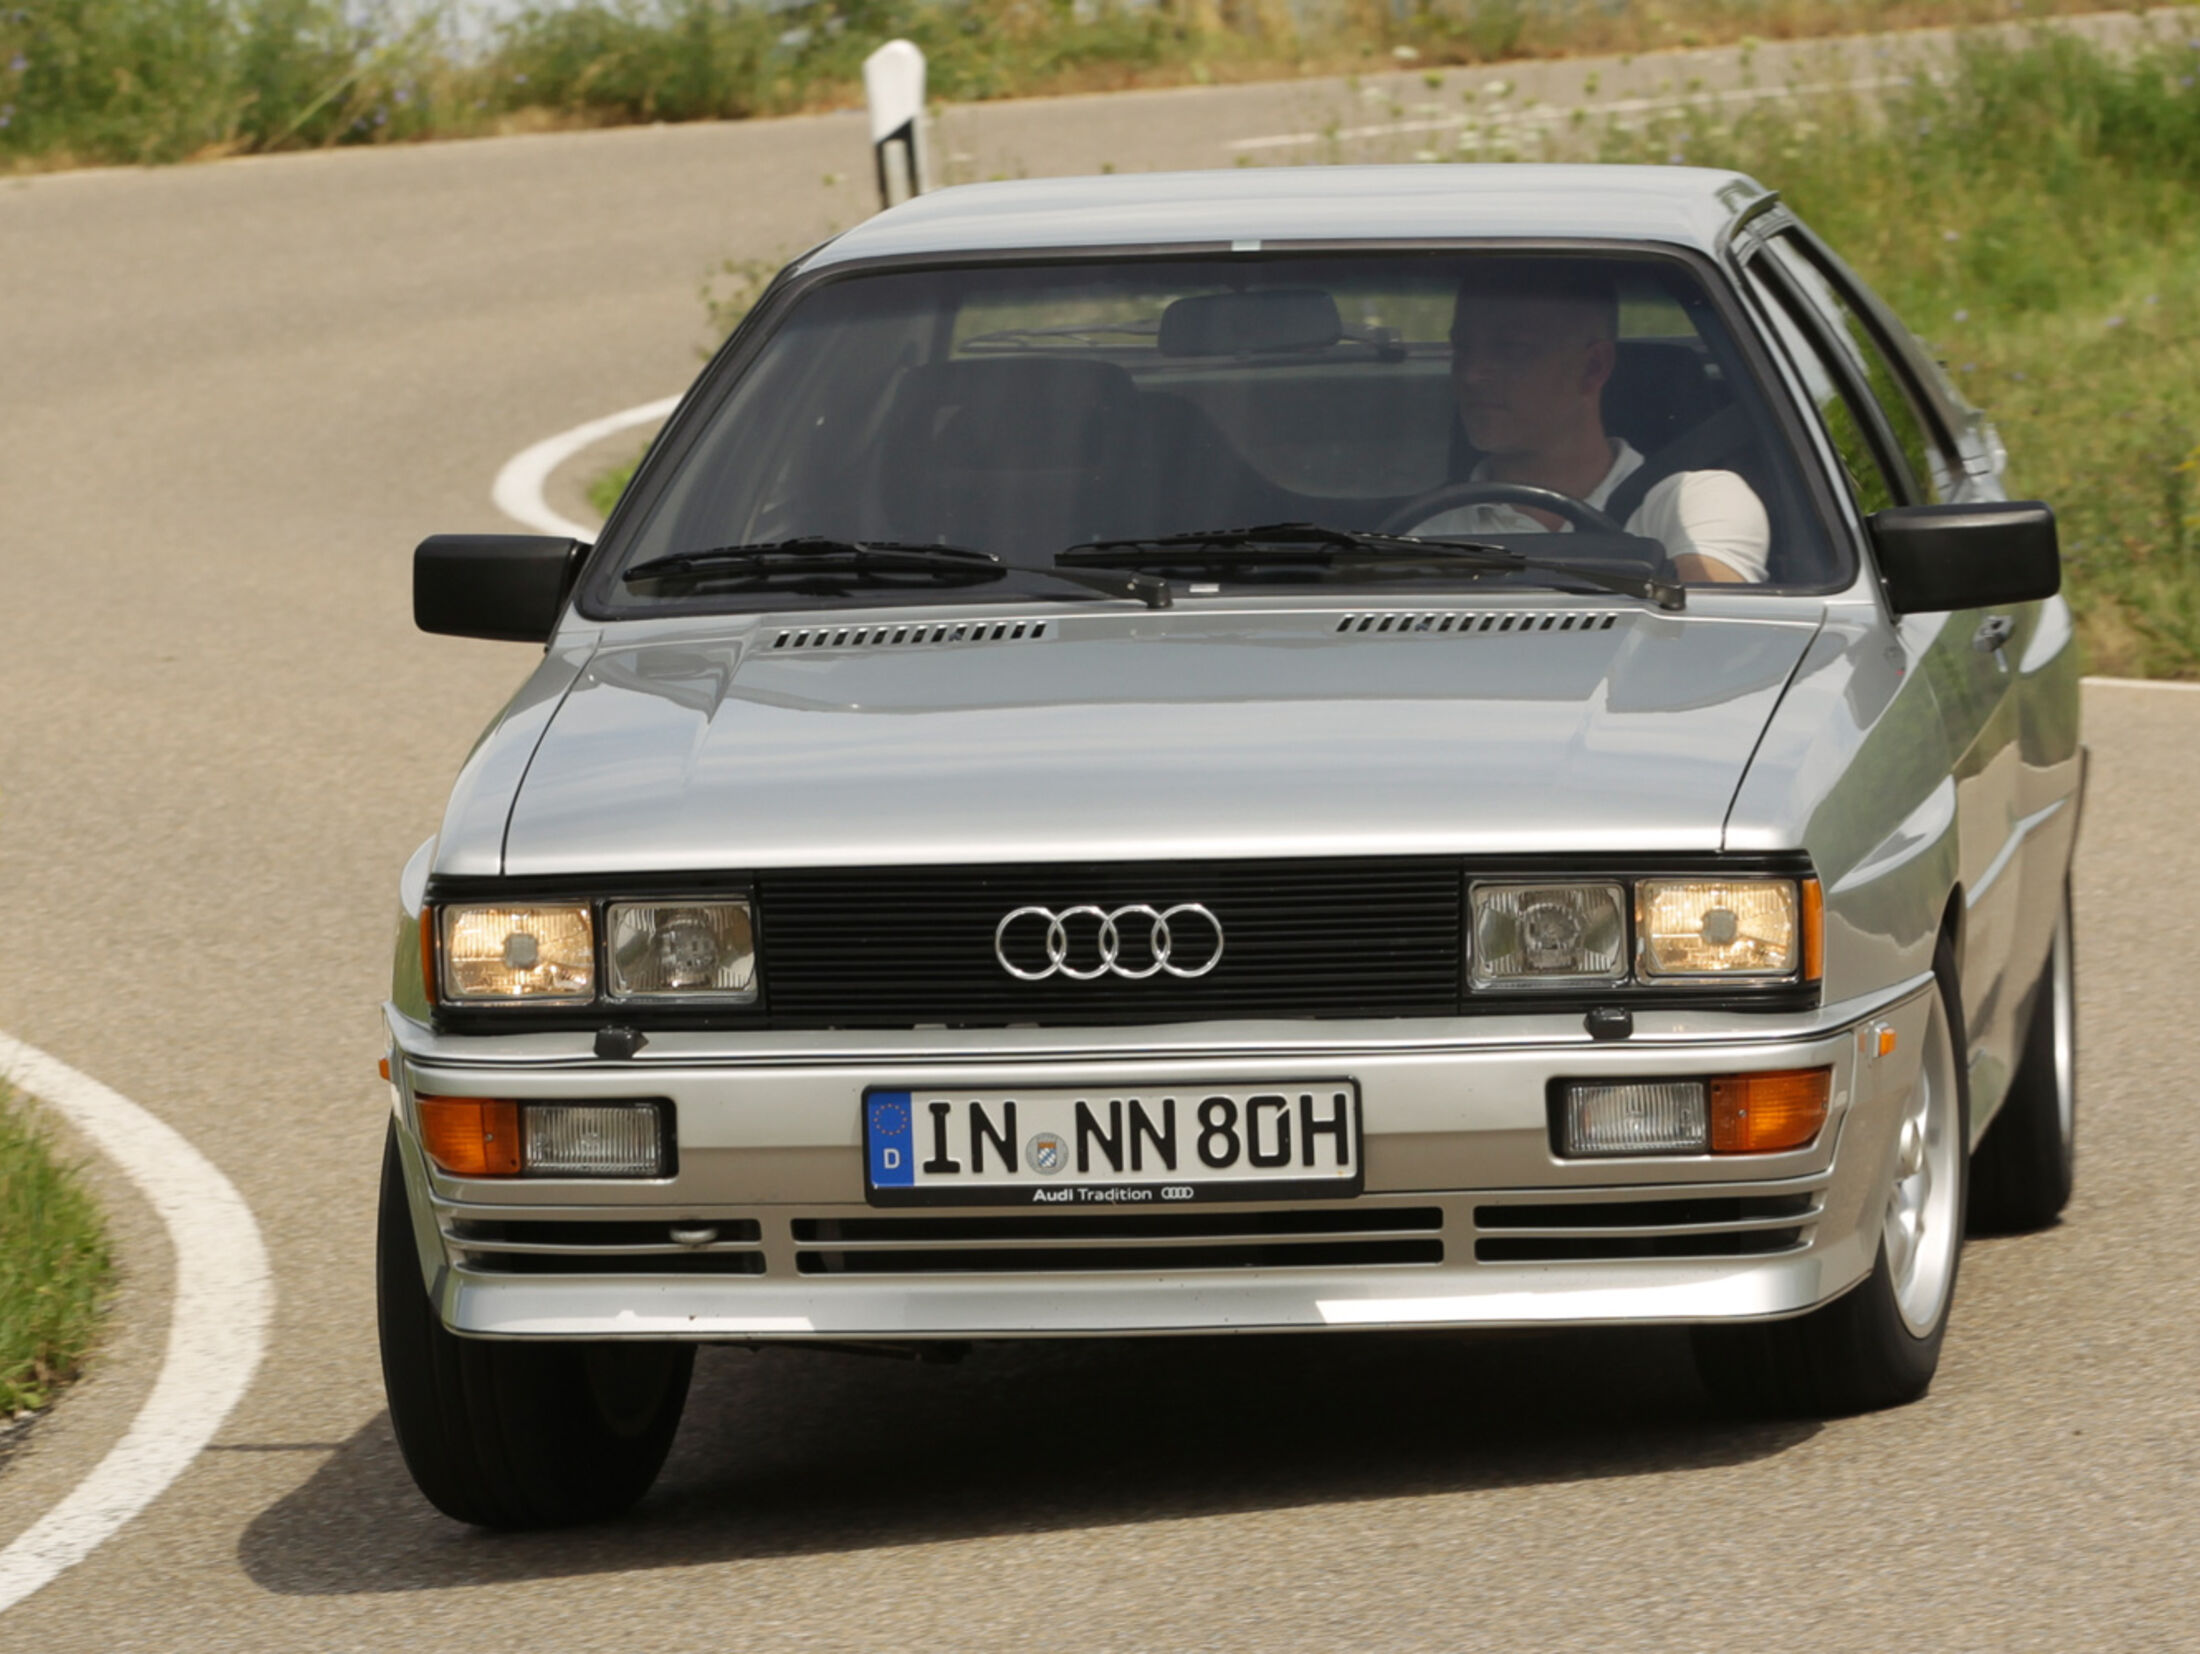 https://imgr1.auto-motor-und-sport.de/Audi-quattro-Frontansicht-jsonLd4x3-ebe0fdf3-755506.jpg